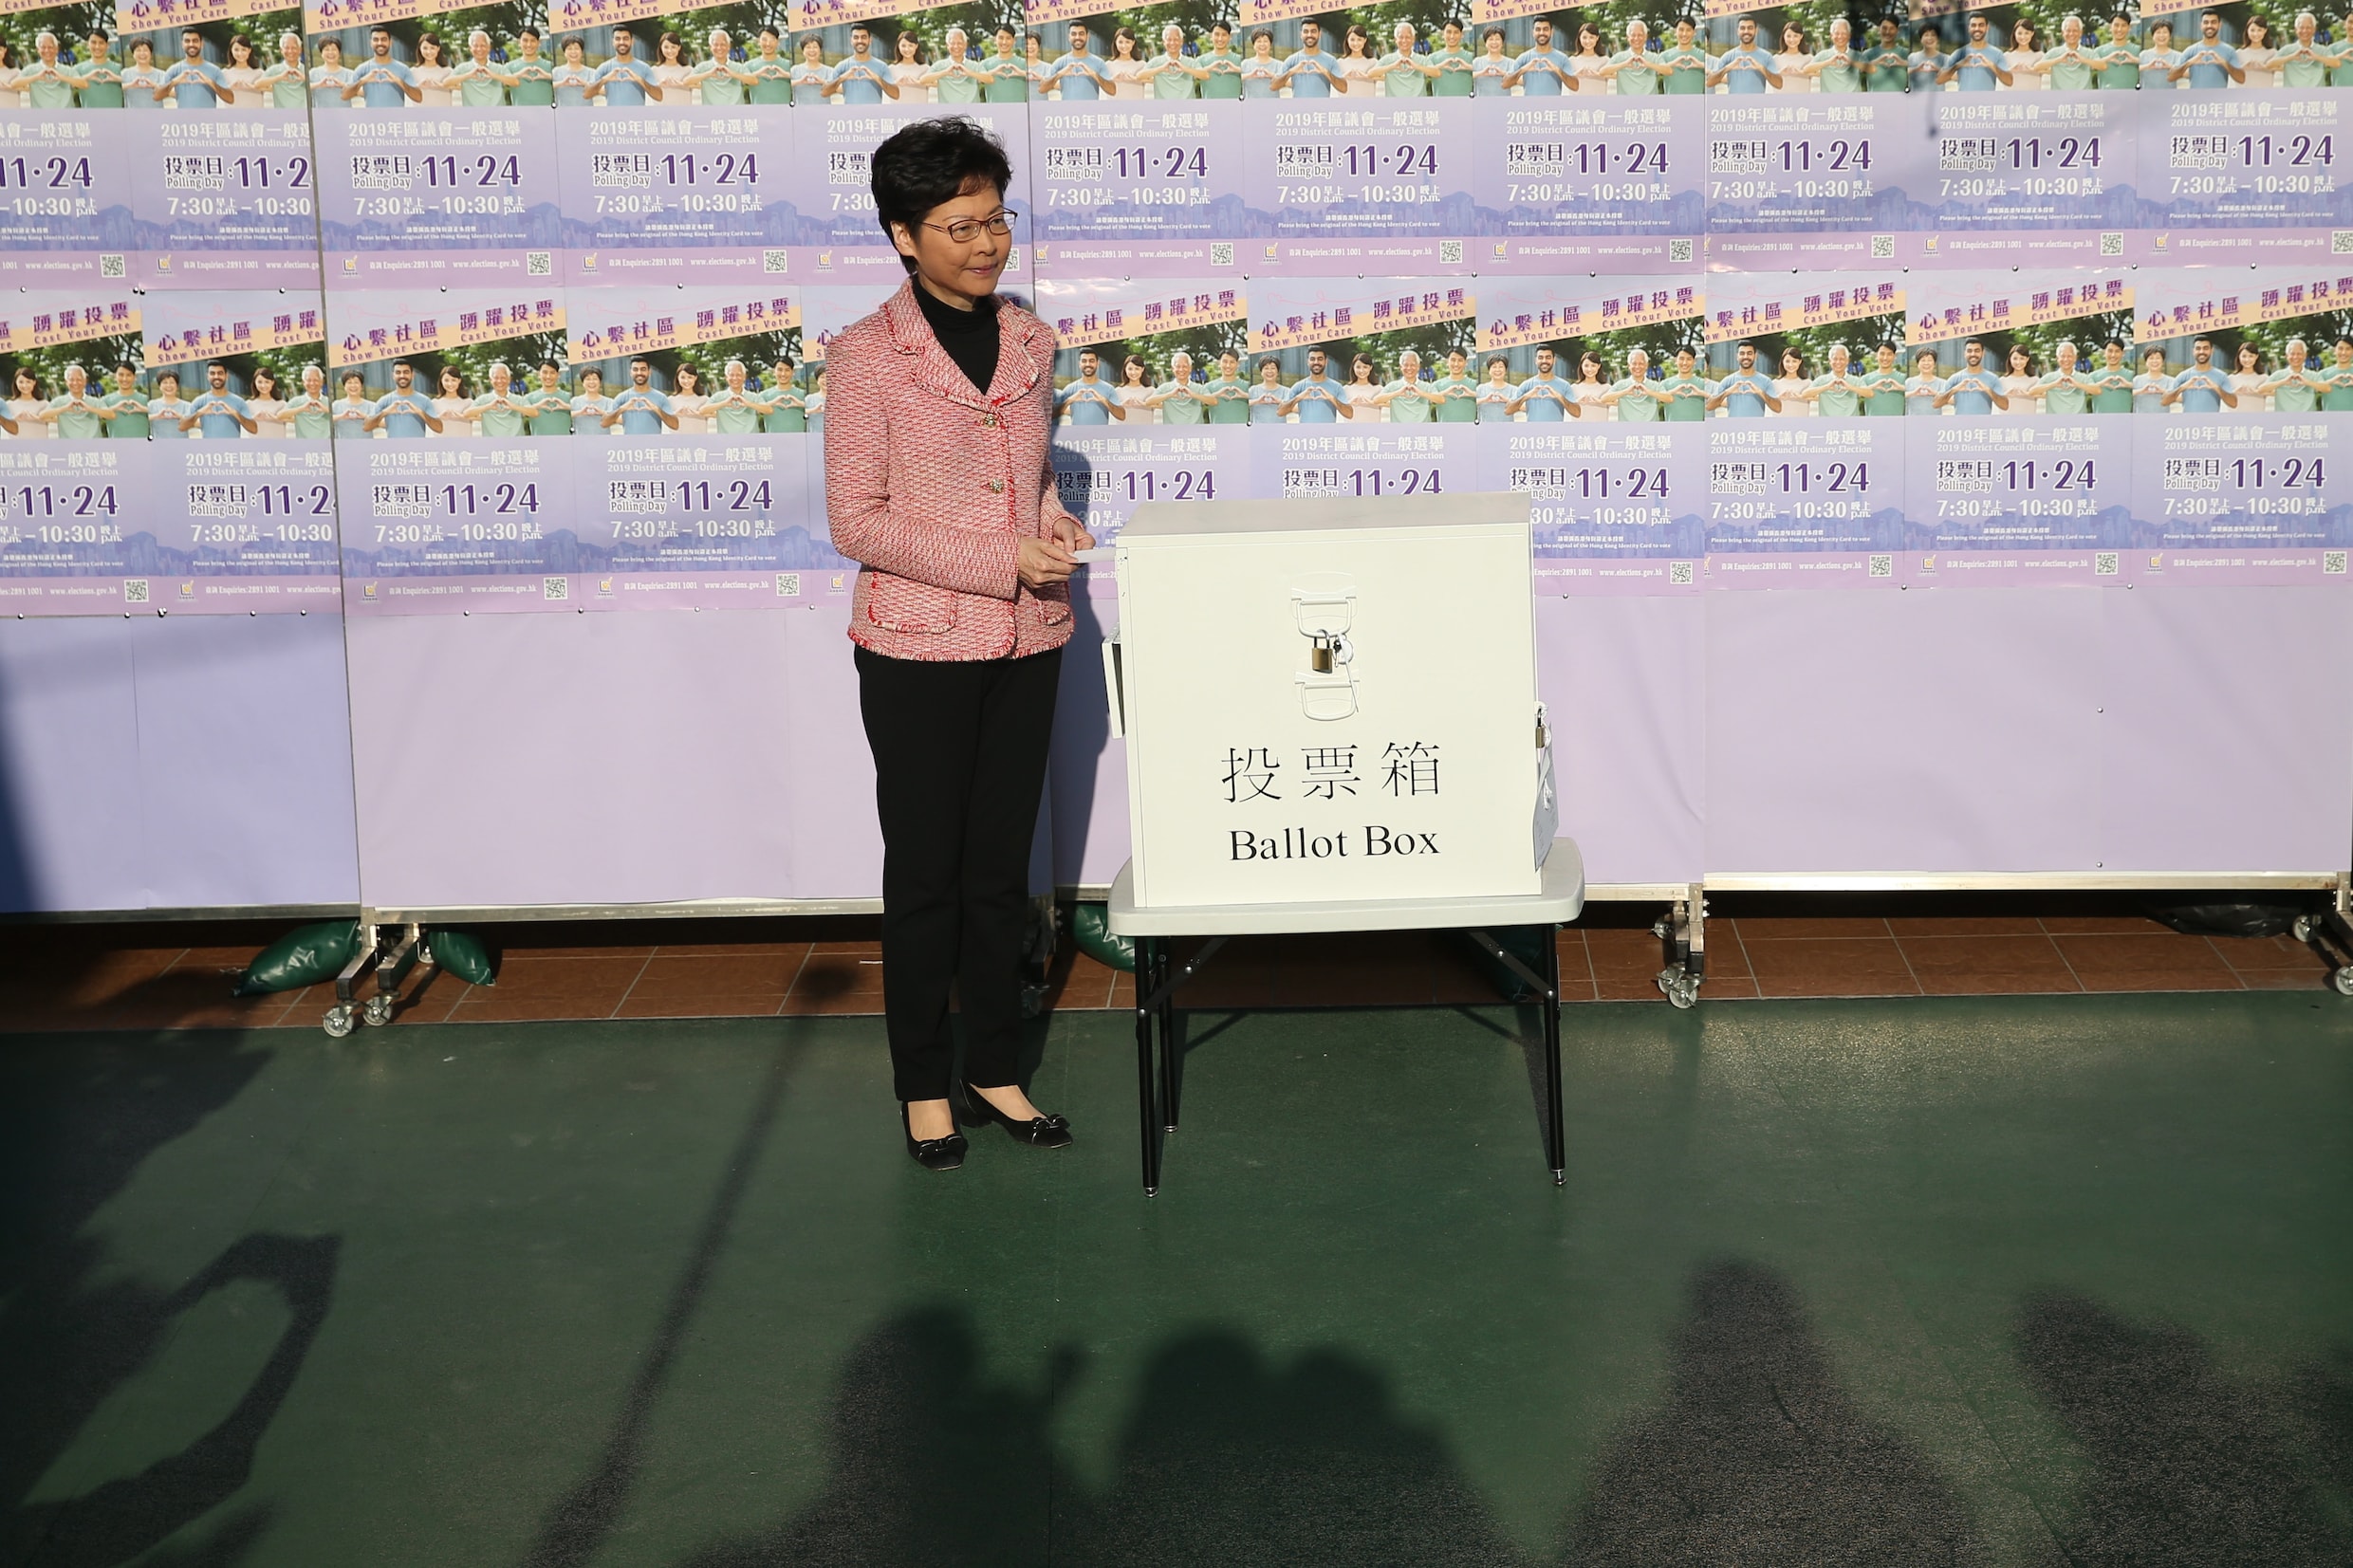 Recordopkomst bij verkiezingen Hongkong: kiezers moeten aanschuiven in lange rijen